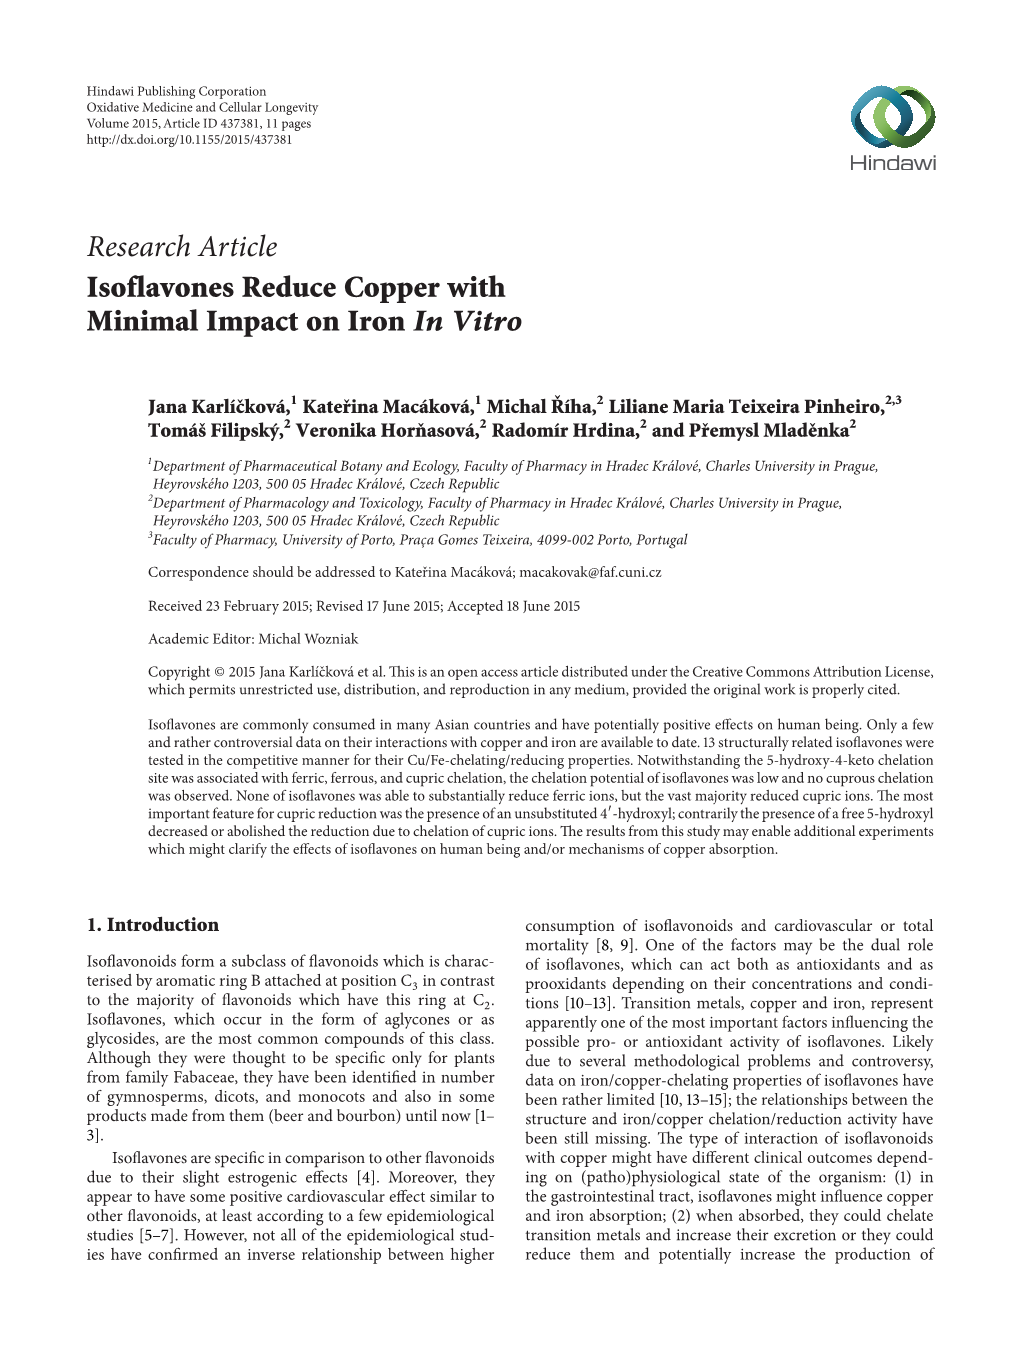 Isoflavones Reduce Copper with Minimal Impact on Iron in Vitro